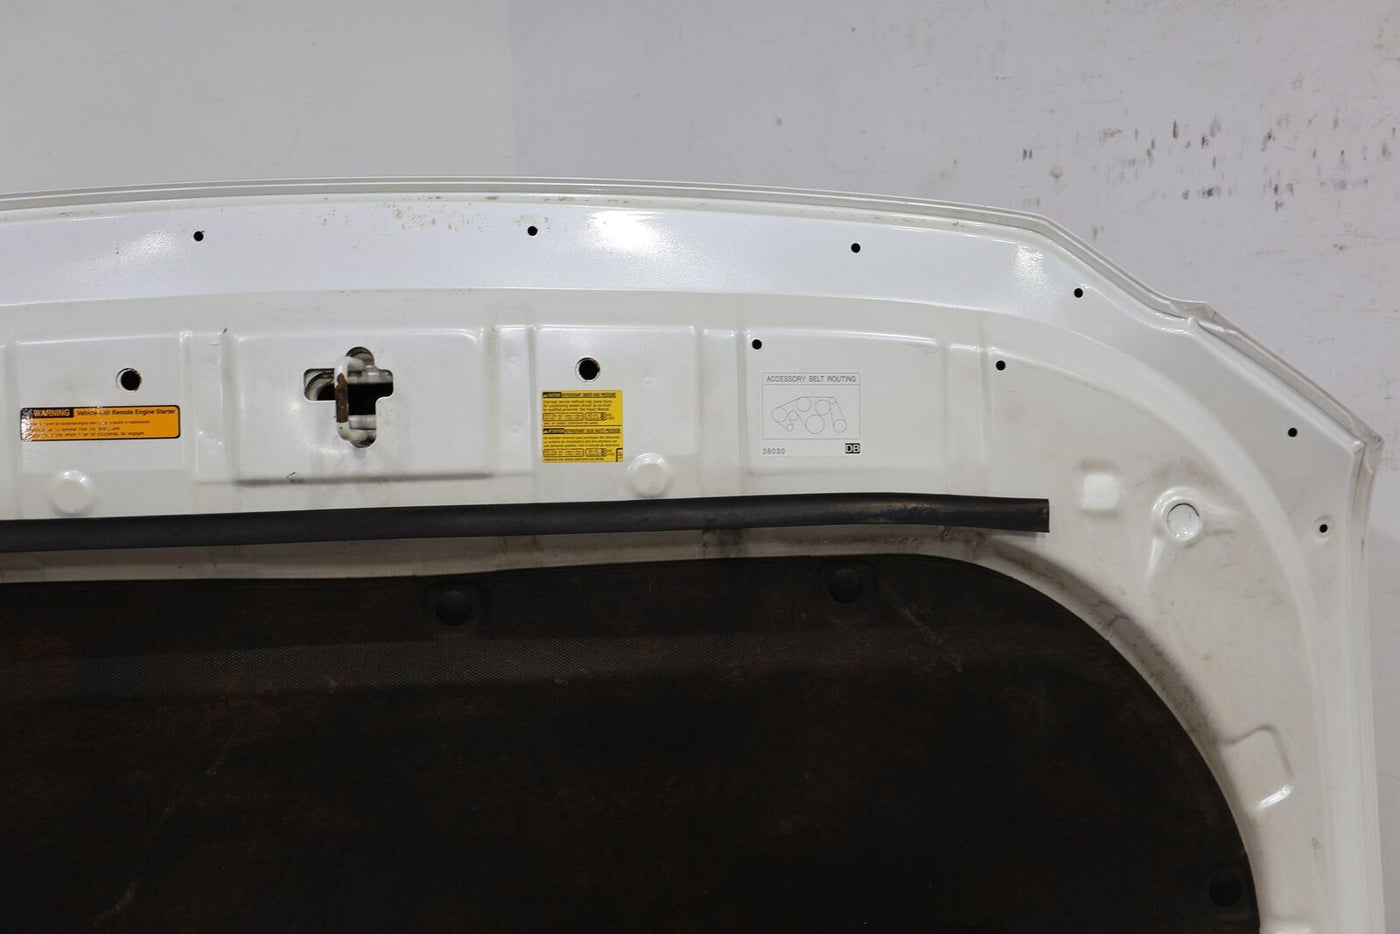 10-21 Lexus GX460 OEM Hood Panel (Starfire Pearl 077) Minor Blemishes